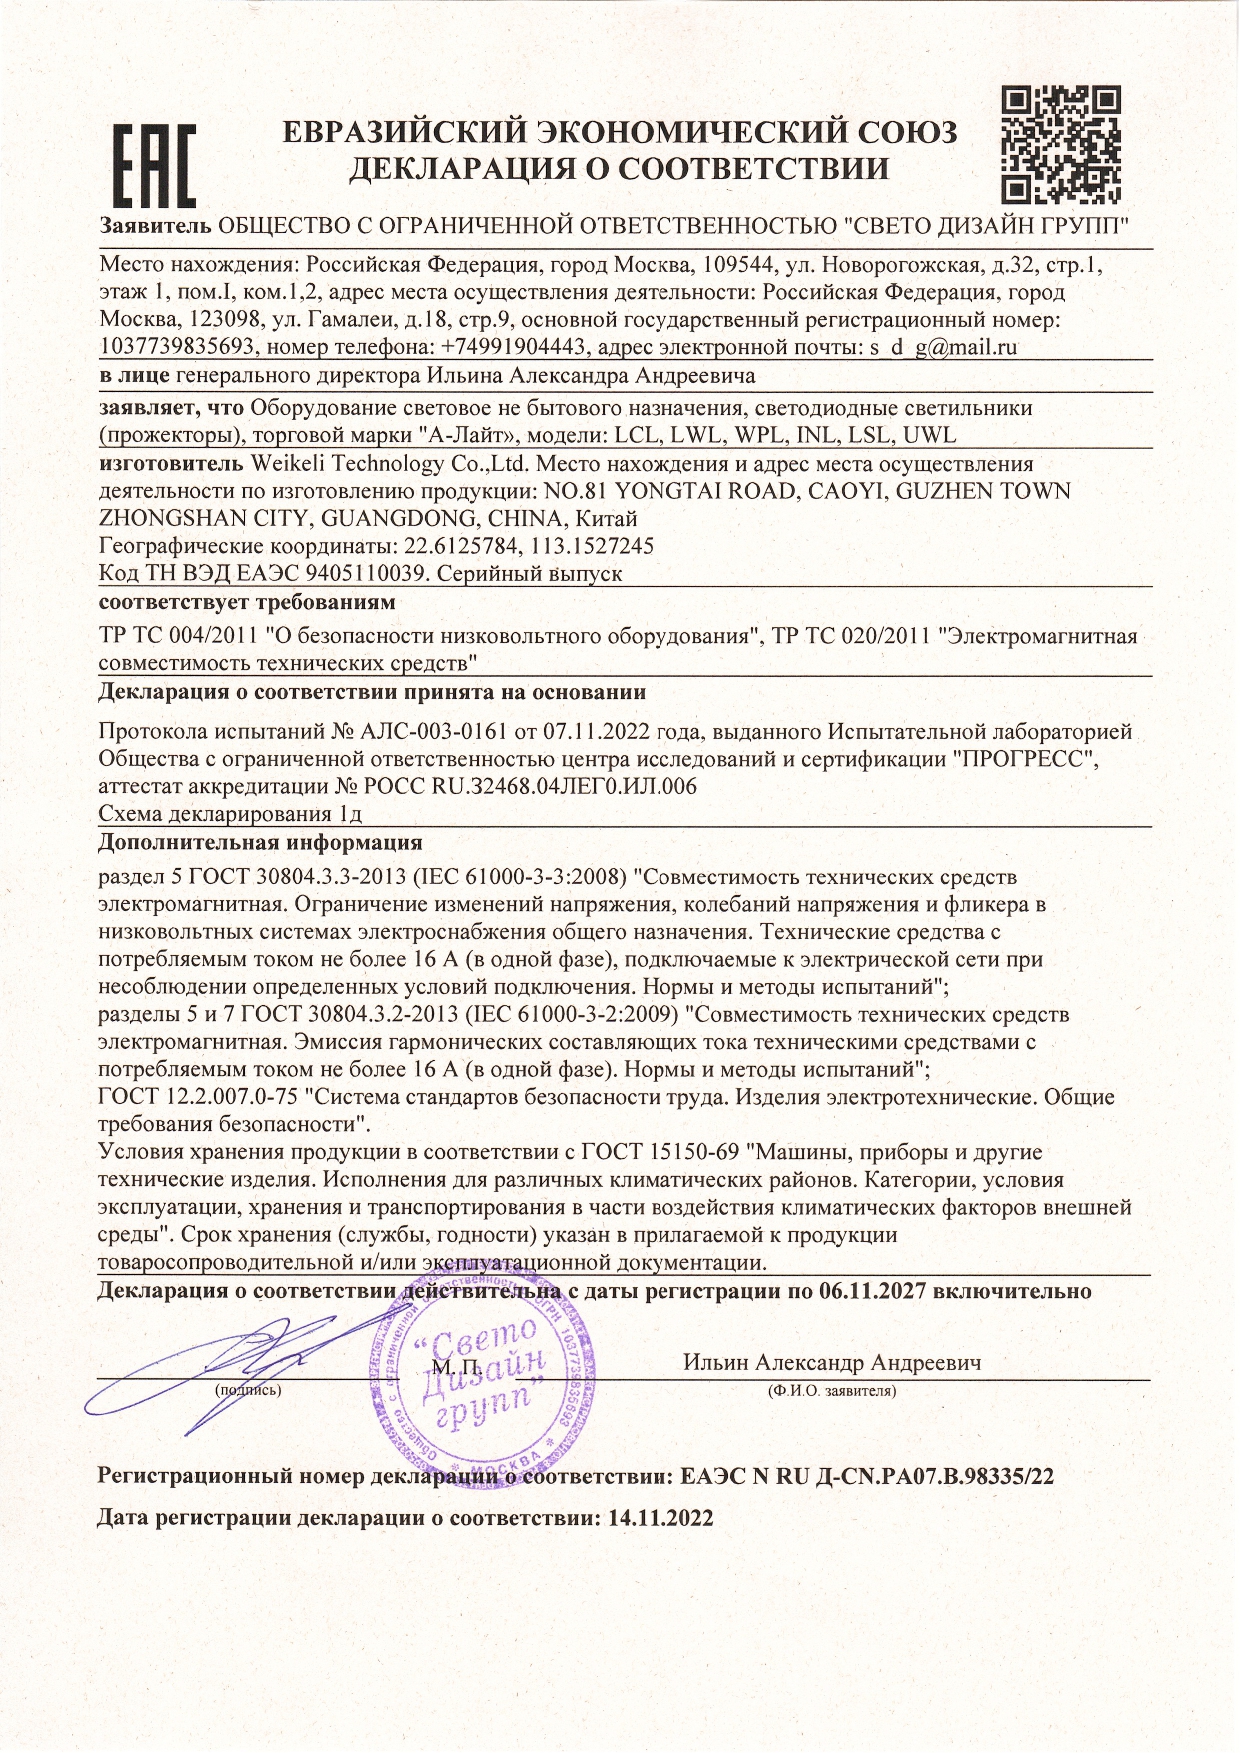 Декларация ЕАЭС №RU Д-CN.PA07.B.98335 22_page-0001